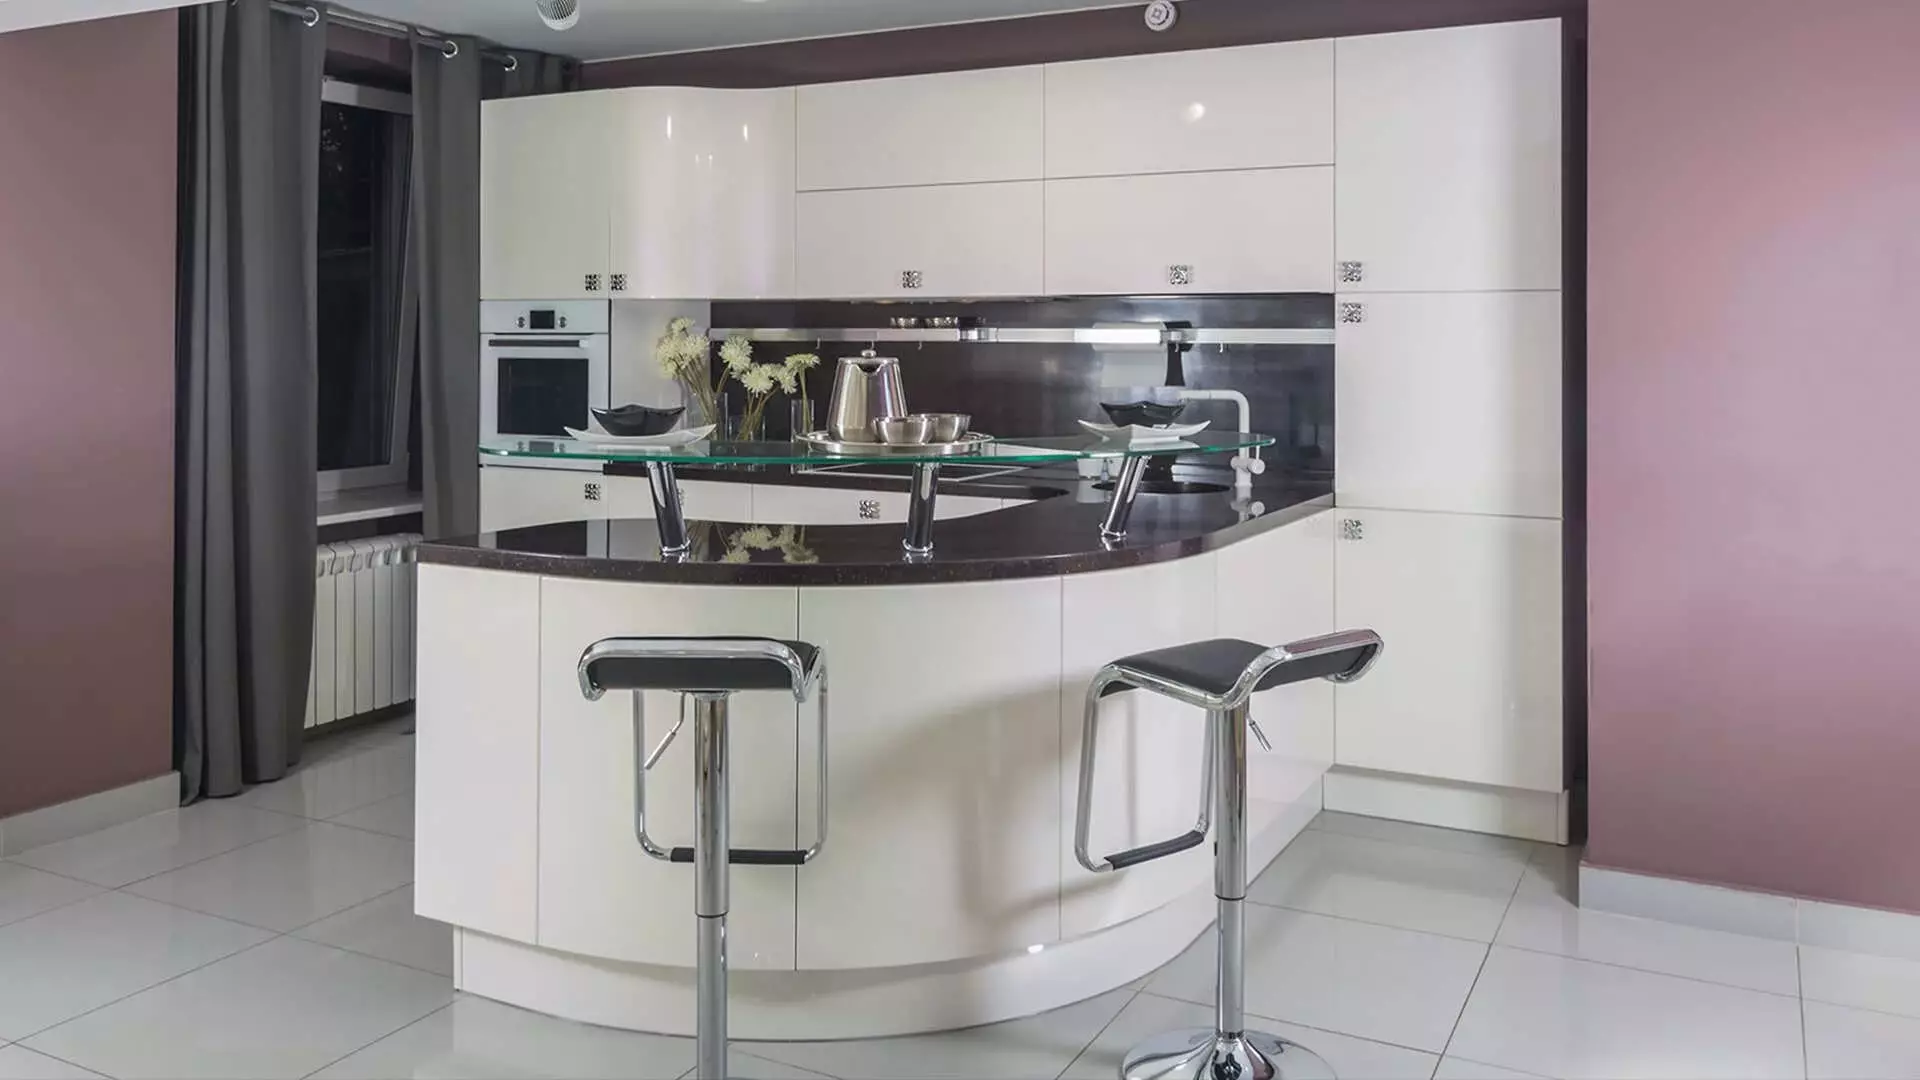 Ενσωματωμένη κουζίνα για μικρές κουζίνες (54 φωτογραφίες): Χαρακτηριστικά ενσωματωμένων κουζινών με ενσωματωμένο εξοπλισμό, επιλογές σχεδιασμού 9549_30